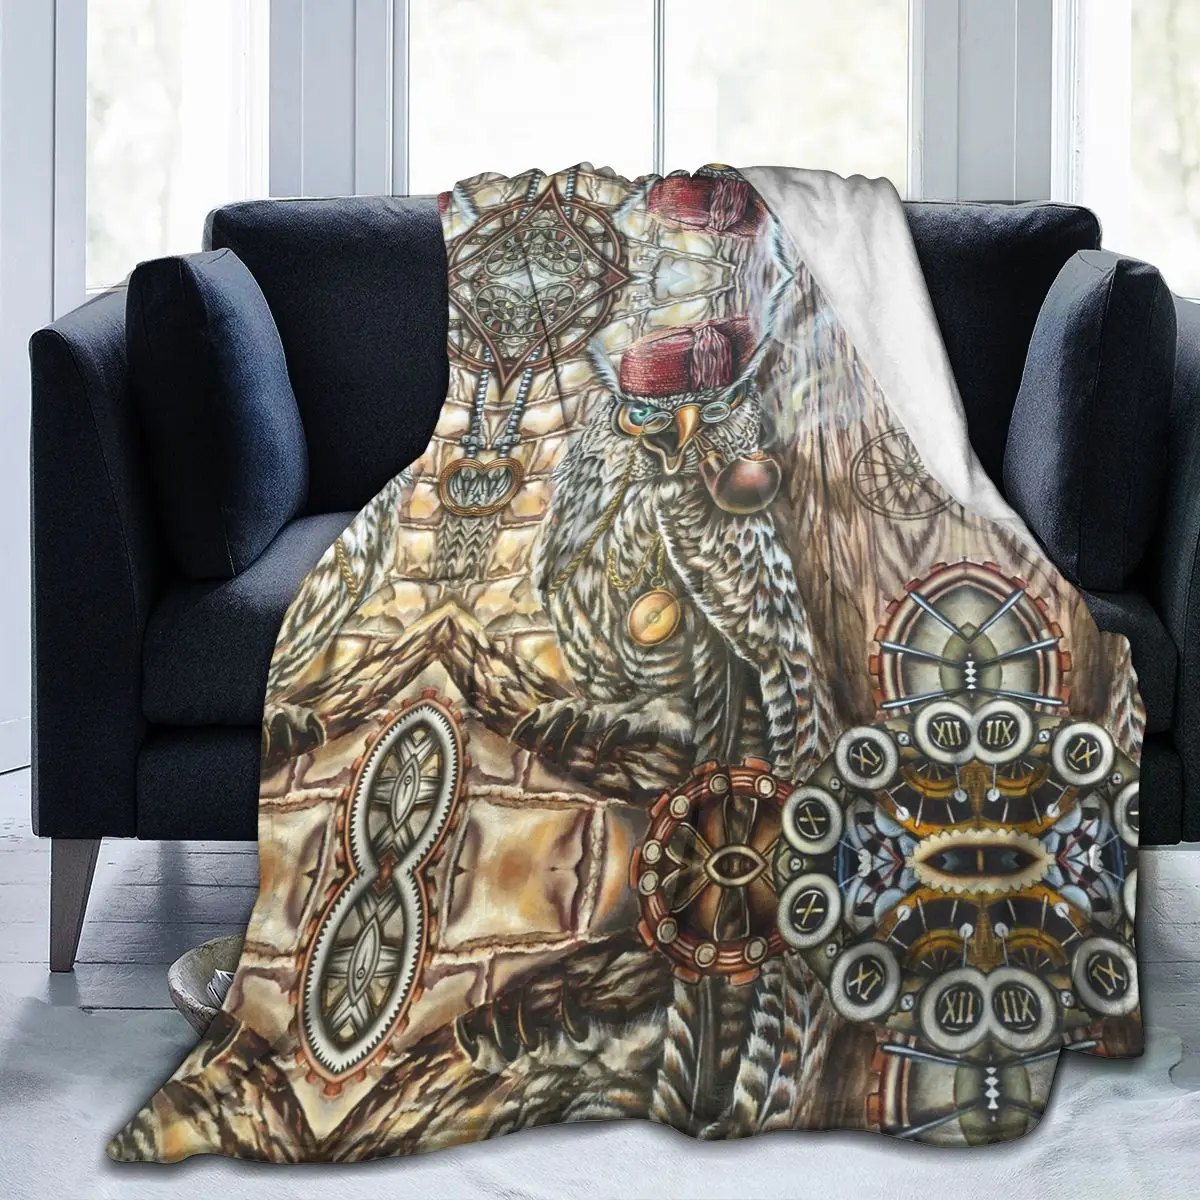 

Фланелевое Одеяло в стиле стимпанк, ультрамягкое Флисовое одеяло с принтом совы, покрывало для халата, дивана, кровати, путешествий, дома, зи...